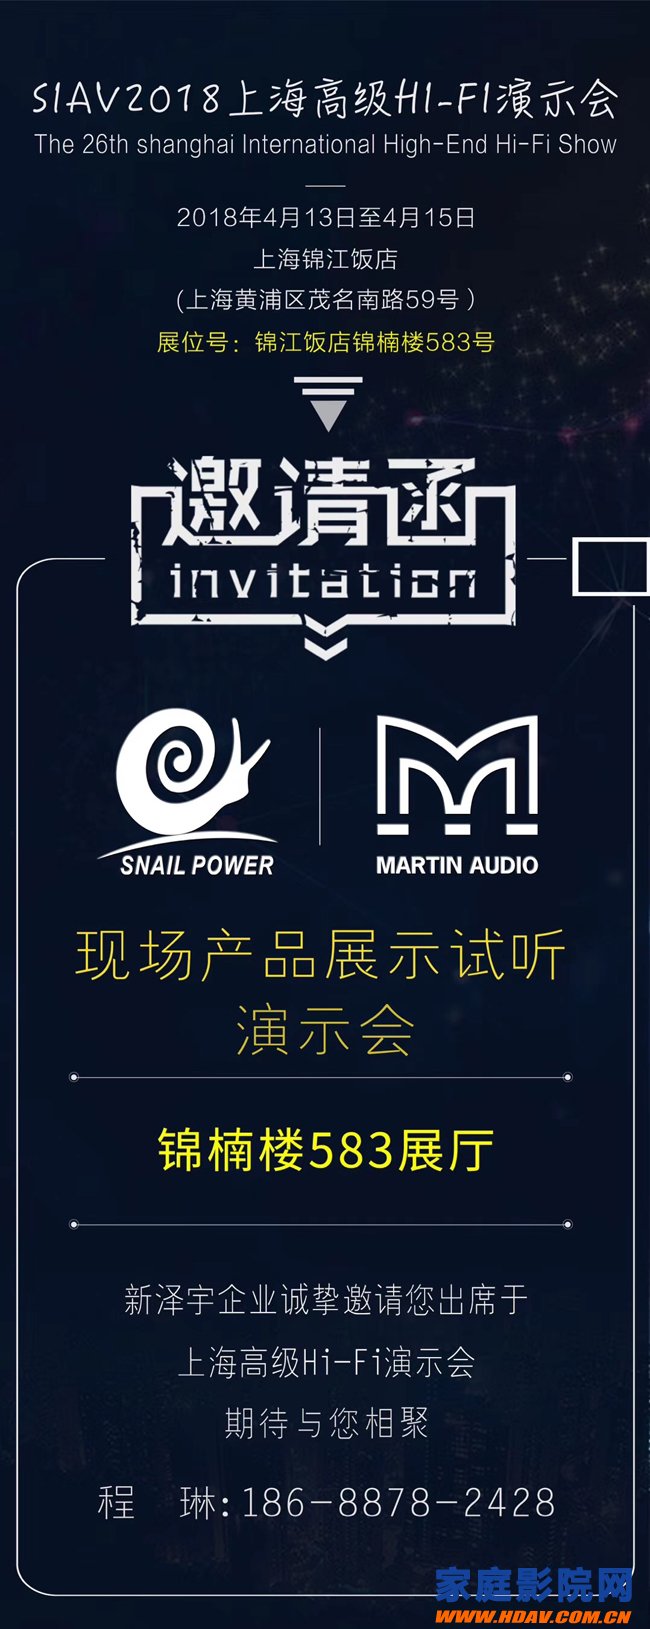 意大利蜗牛音响携英国玛田邀您参加2018 SIAV上海HIFI音响展会(图1)